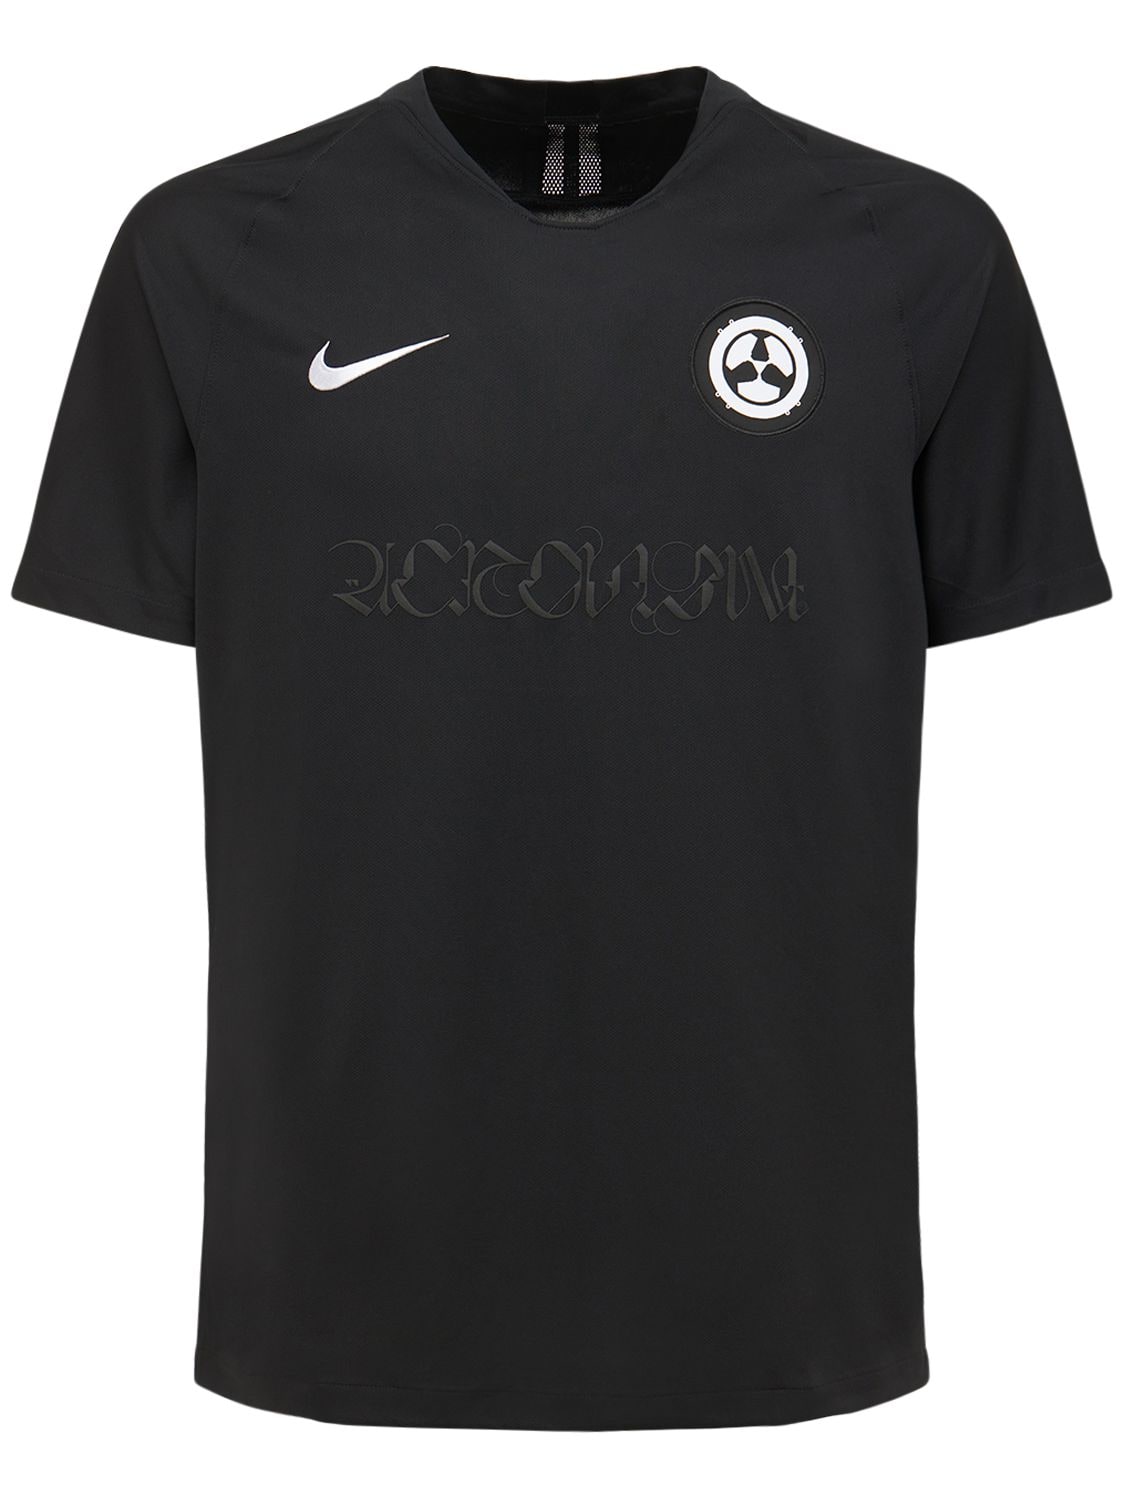 Nike - Acronym printed t-shirt - Black | Luisaviaroma